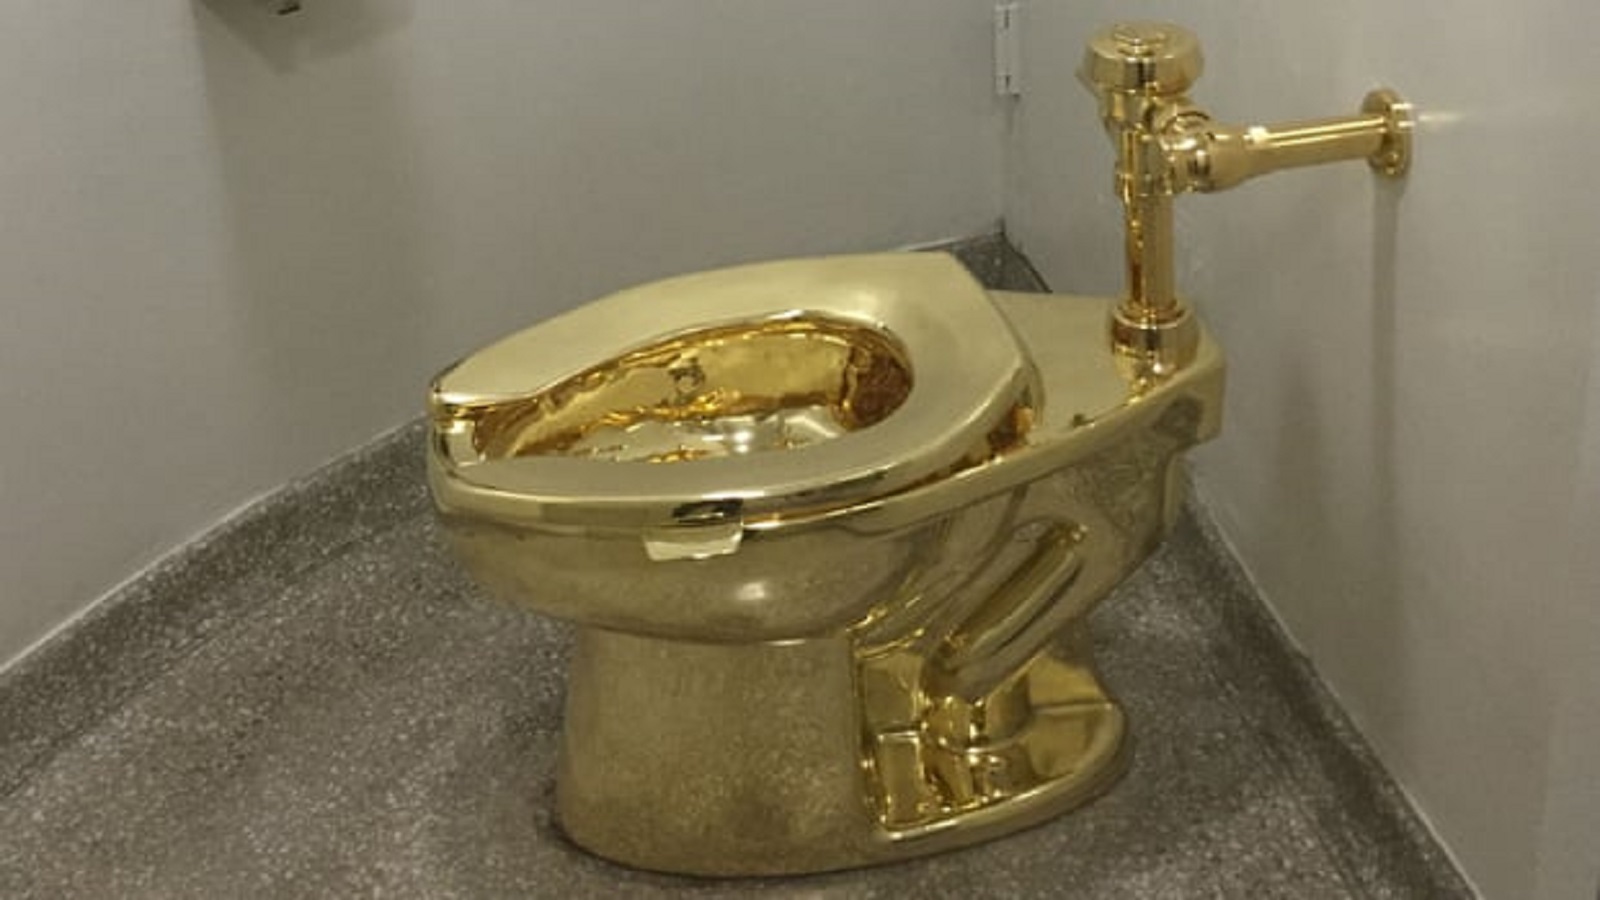 هذا المرحاض الذهبي اسمه "أميركا"